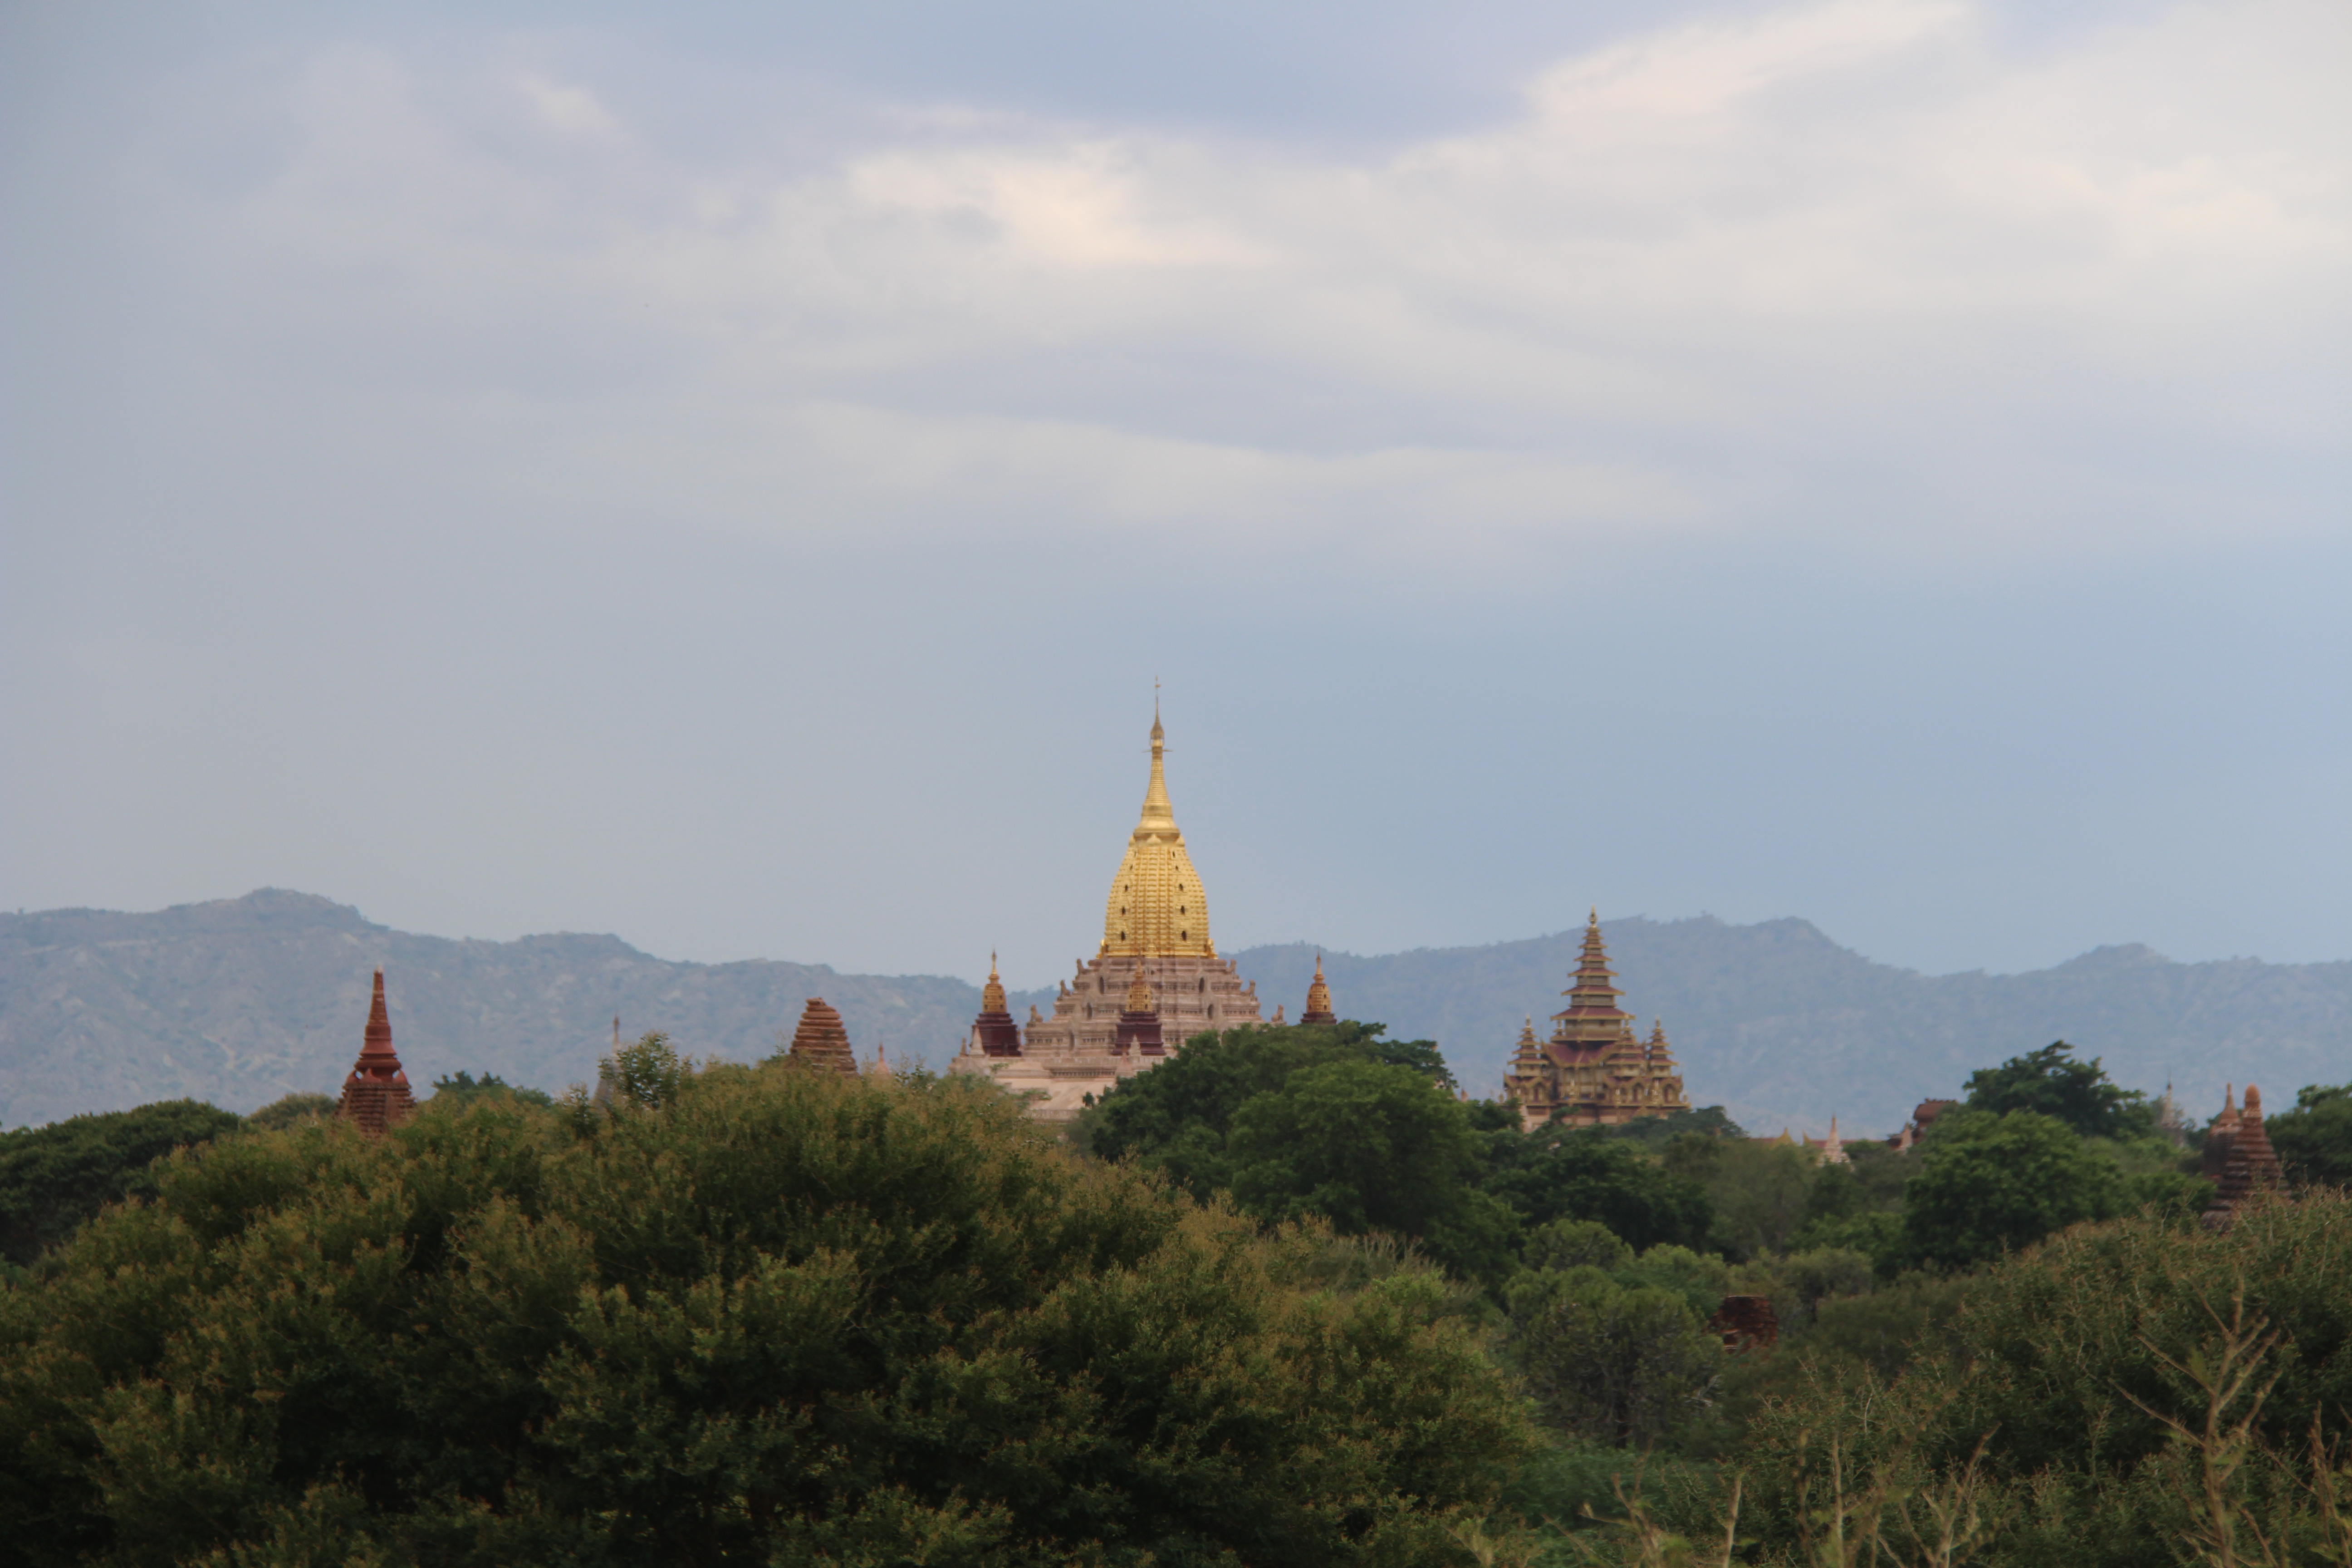 Tempels zonder naam (en zonder bijen) in Bagan